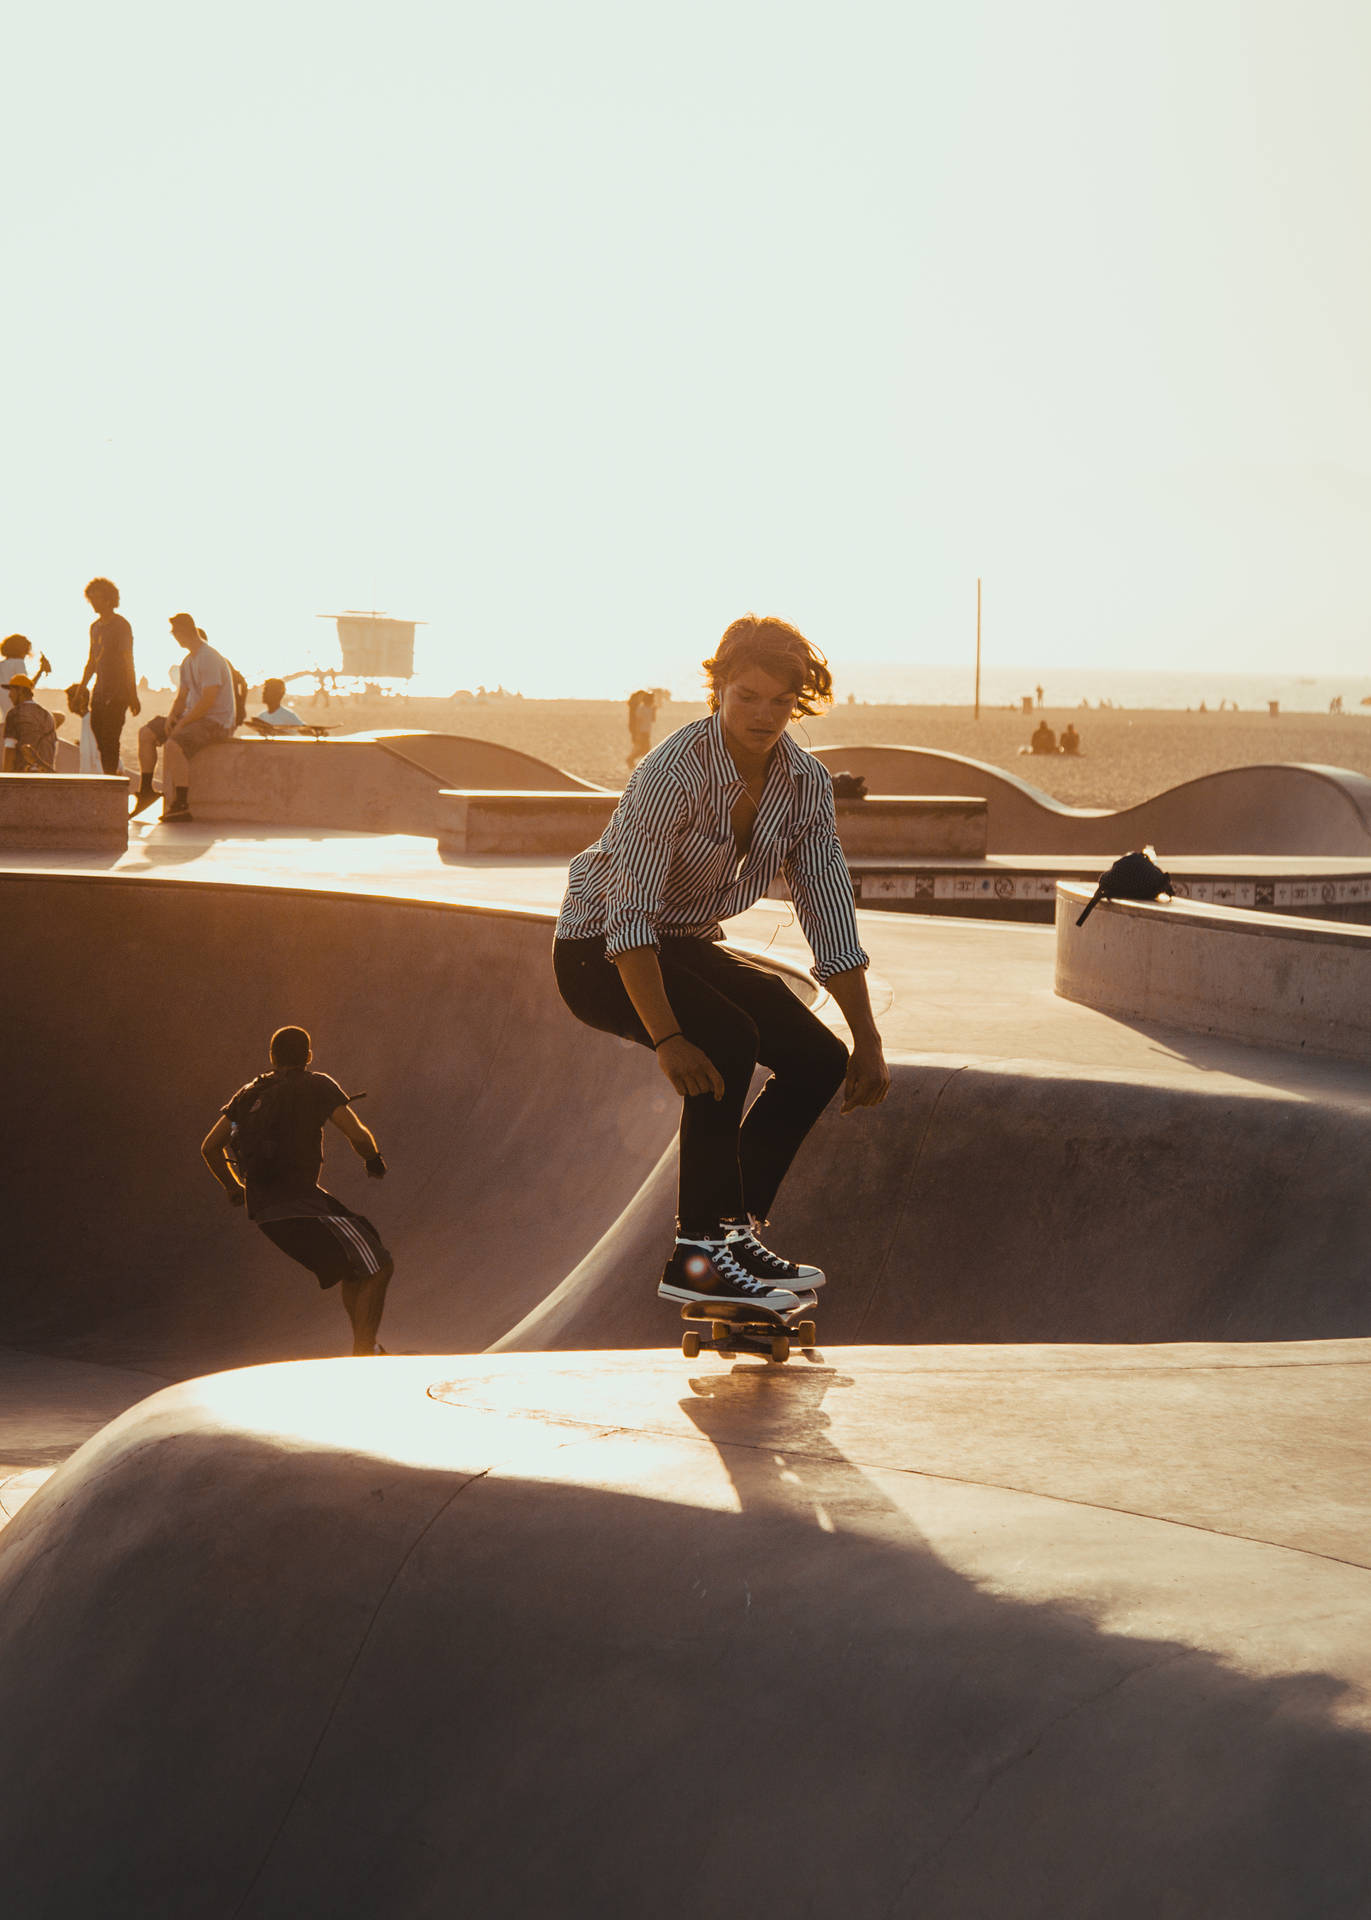 Hipster Skateboard Park Background